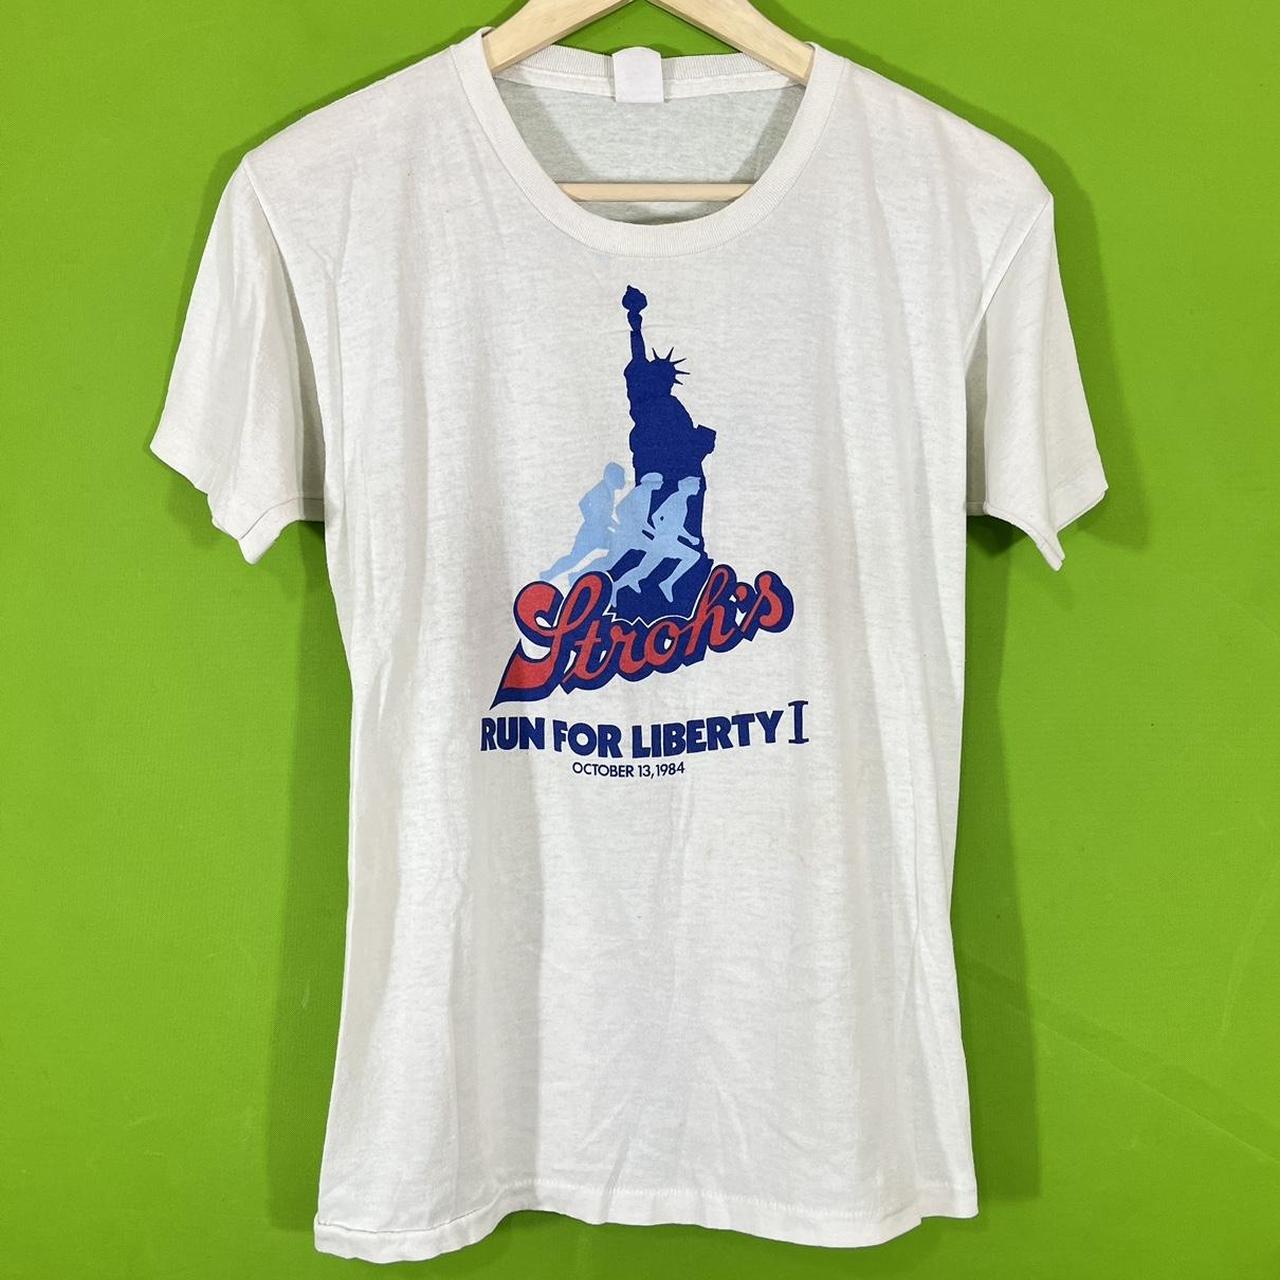 L 1984 Stroh’s Run for Liberty Tee Shirt wear... - Depop